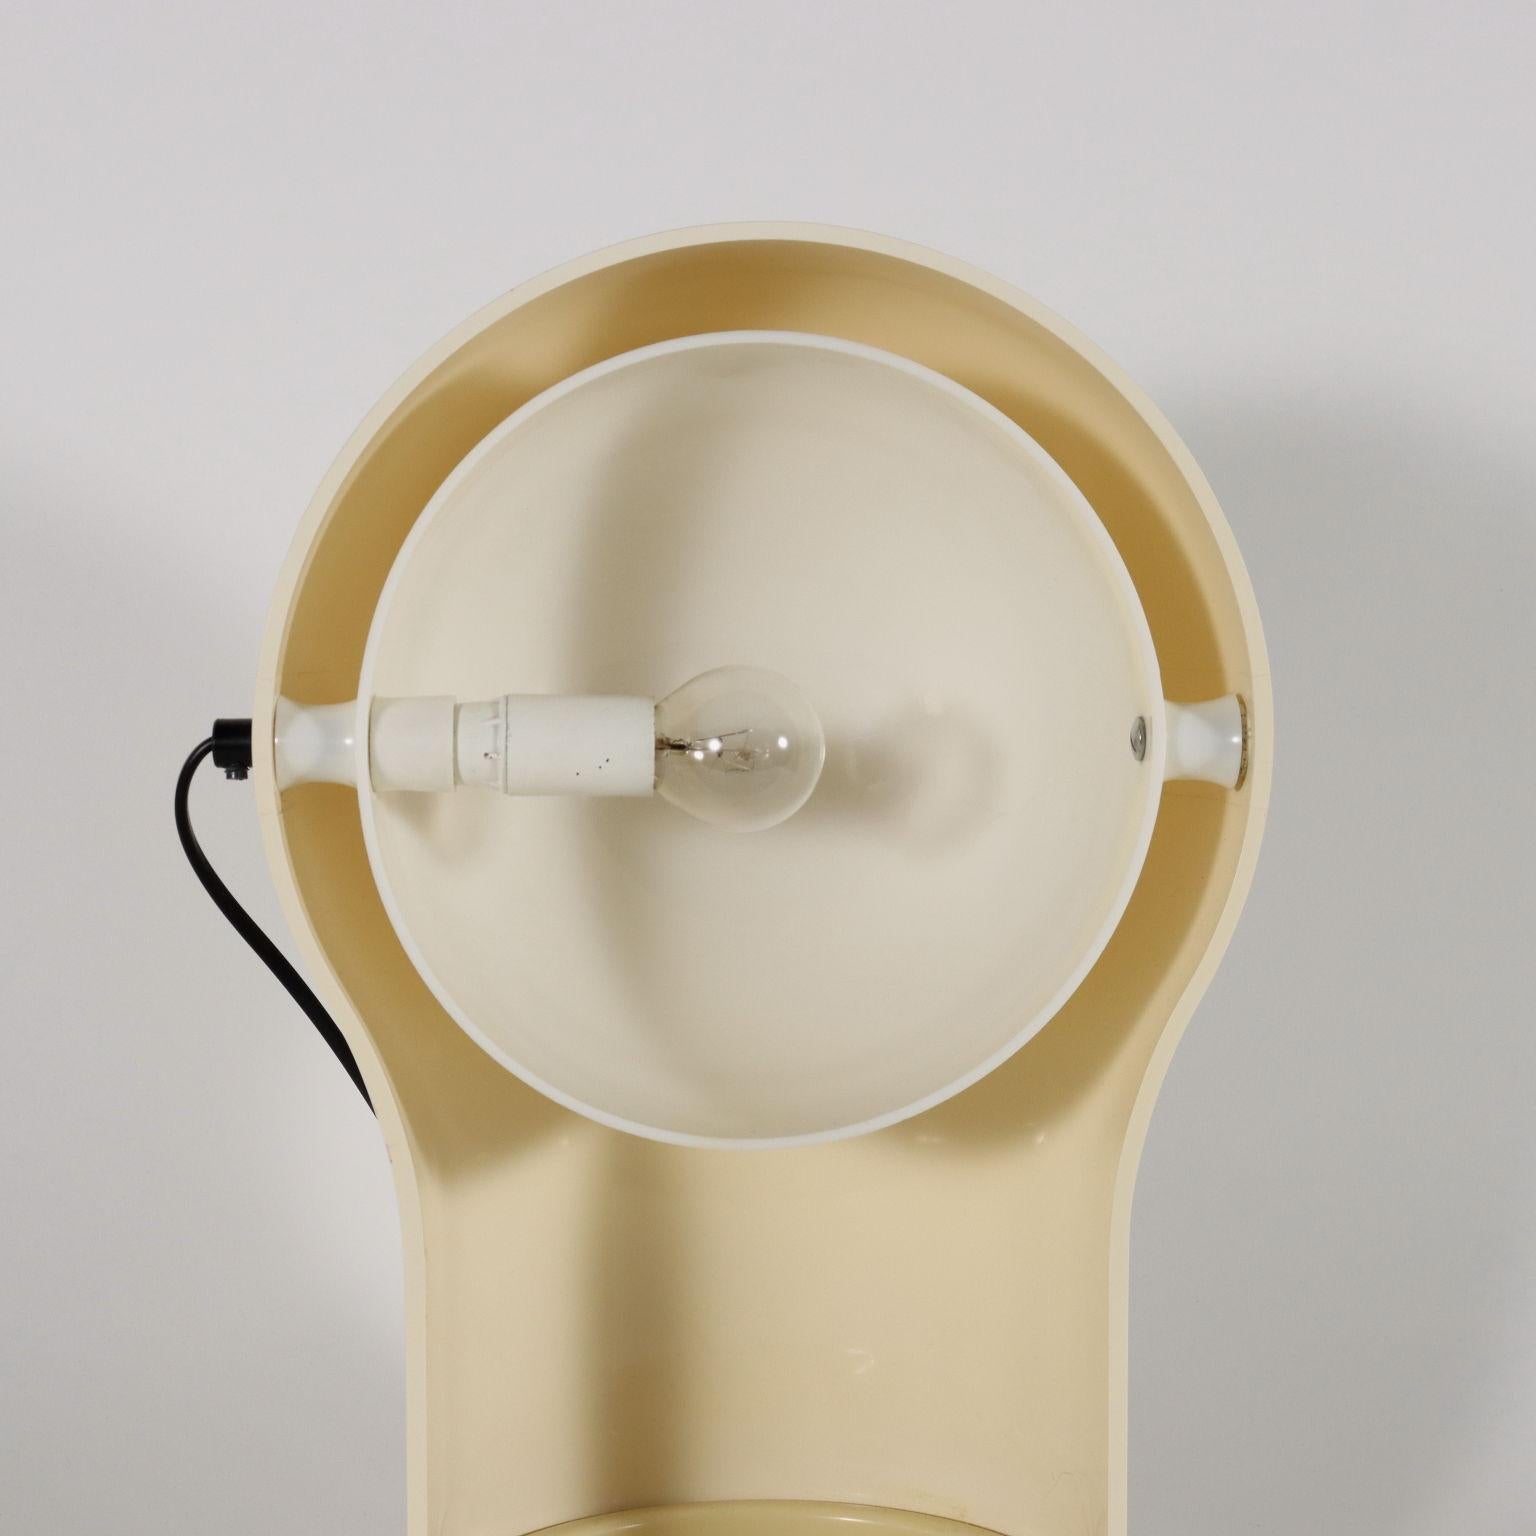 Italian Telegono Lamps by Vico Magistretti for Artemide, 1960s-70s